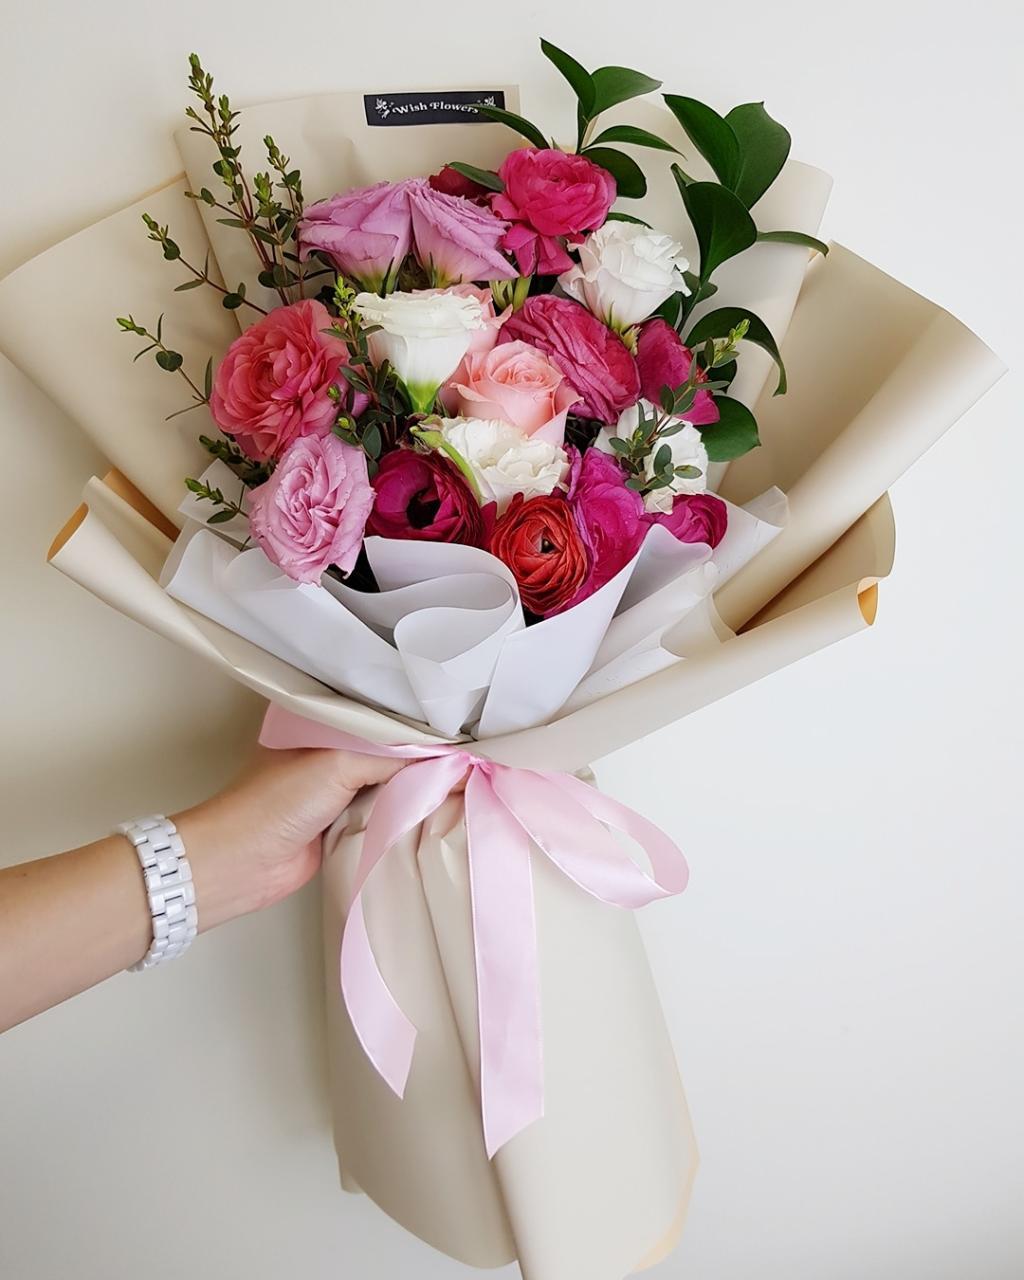 Shop hoa tươi Tuyên Quang - Tình yêu và sự trân quý của hoa